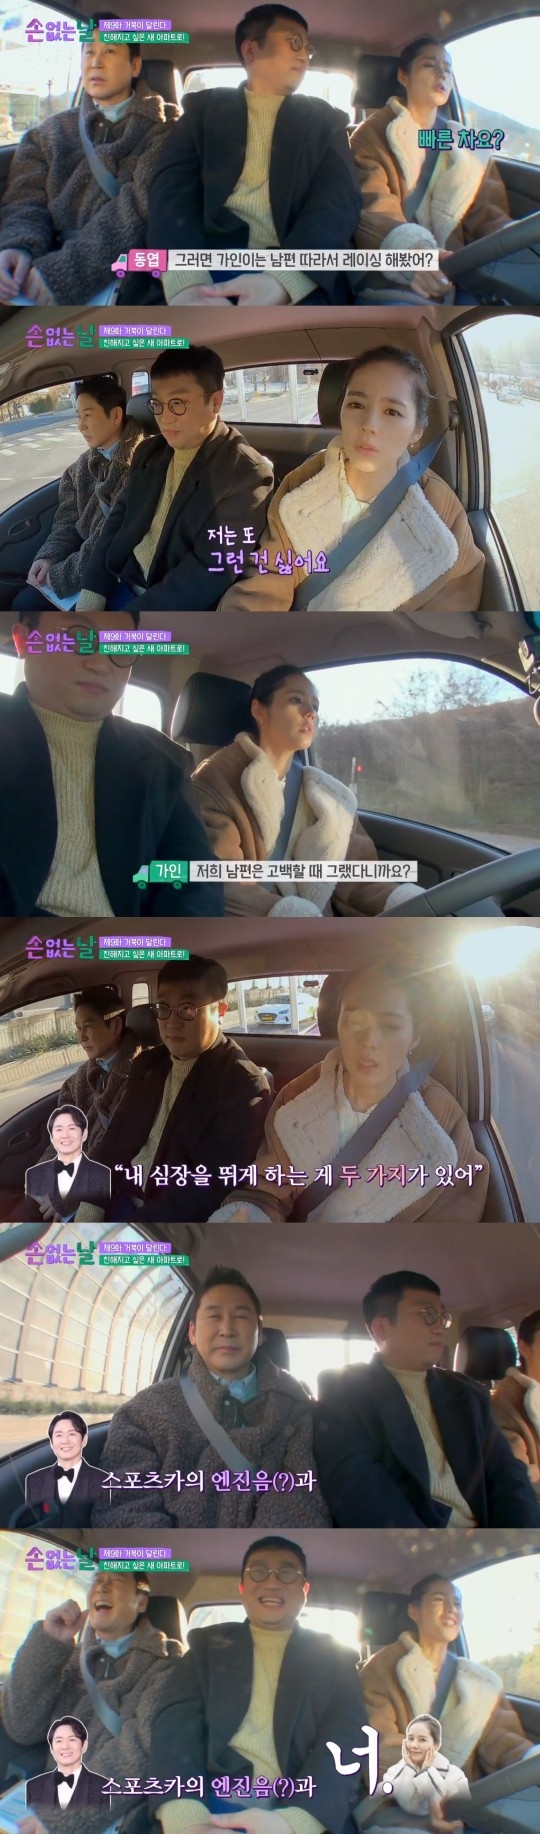 JTBC 예능 프로그램 ‘손 없는 날’